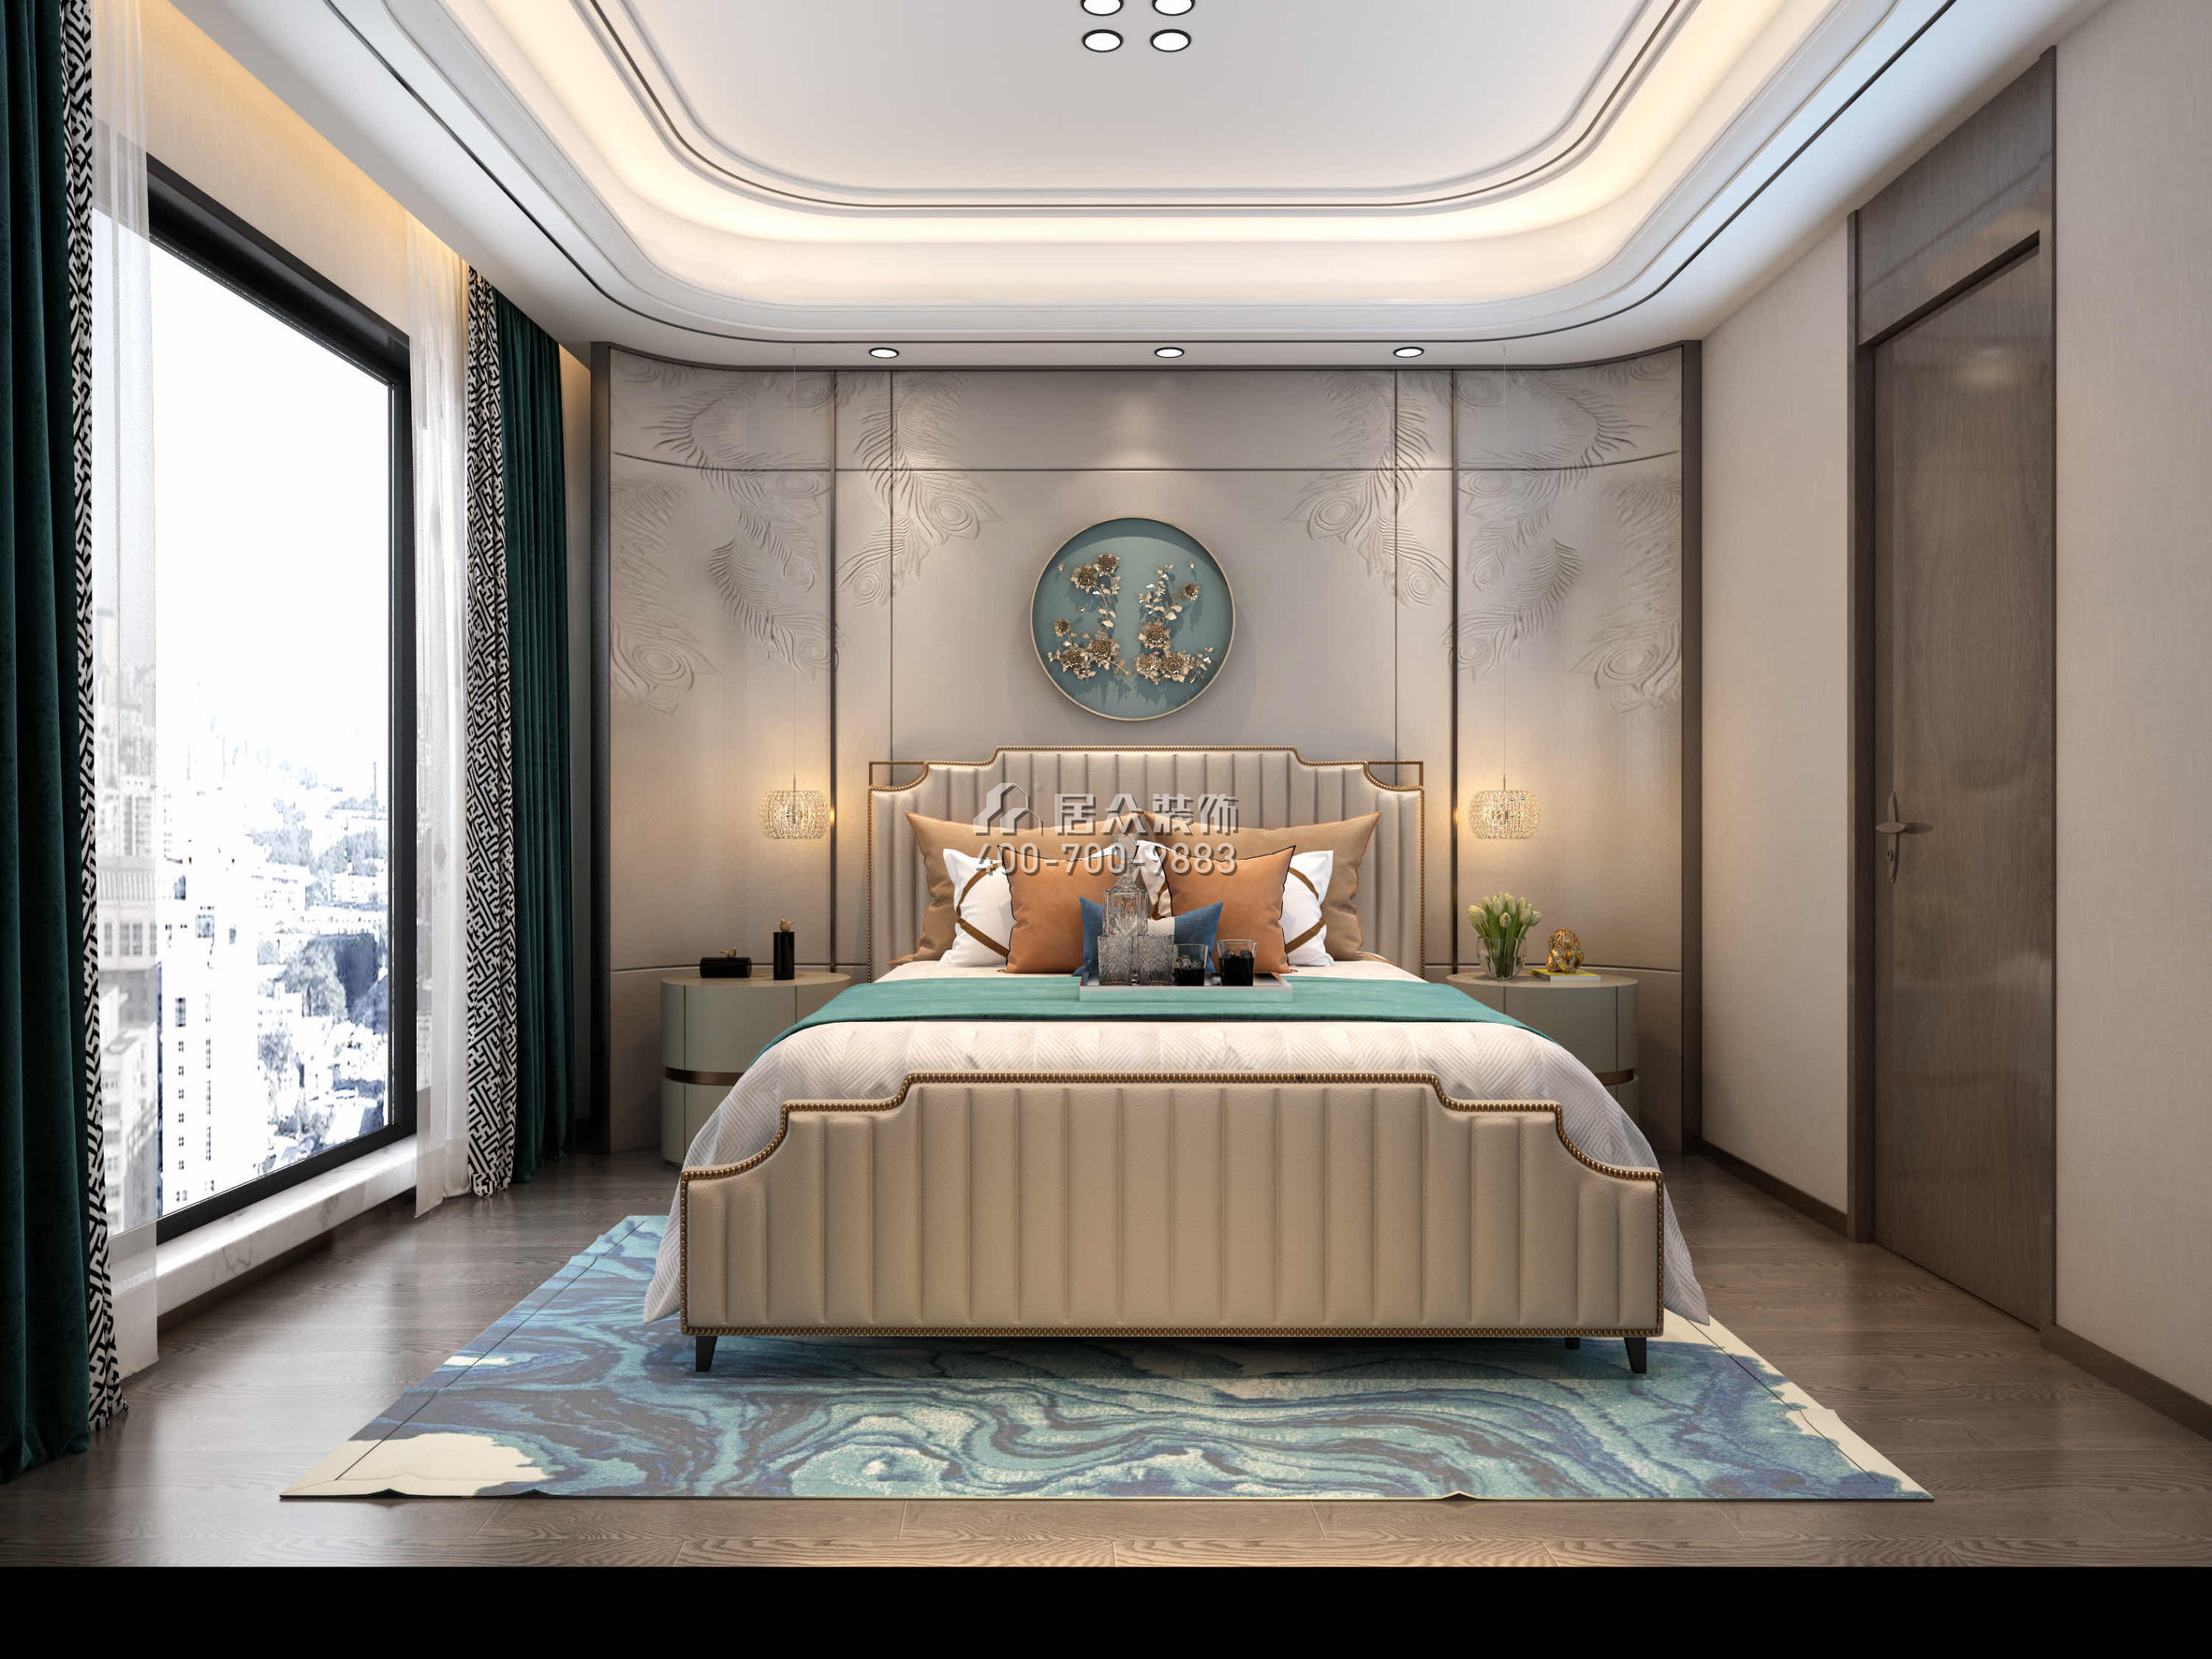 新天鹅堡289平方米现代简约风格平层户型卧室装修效果图